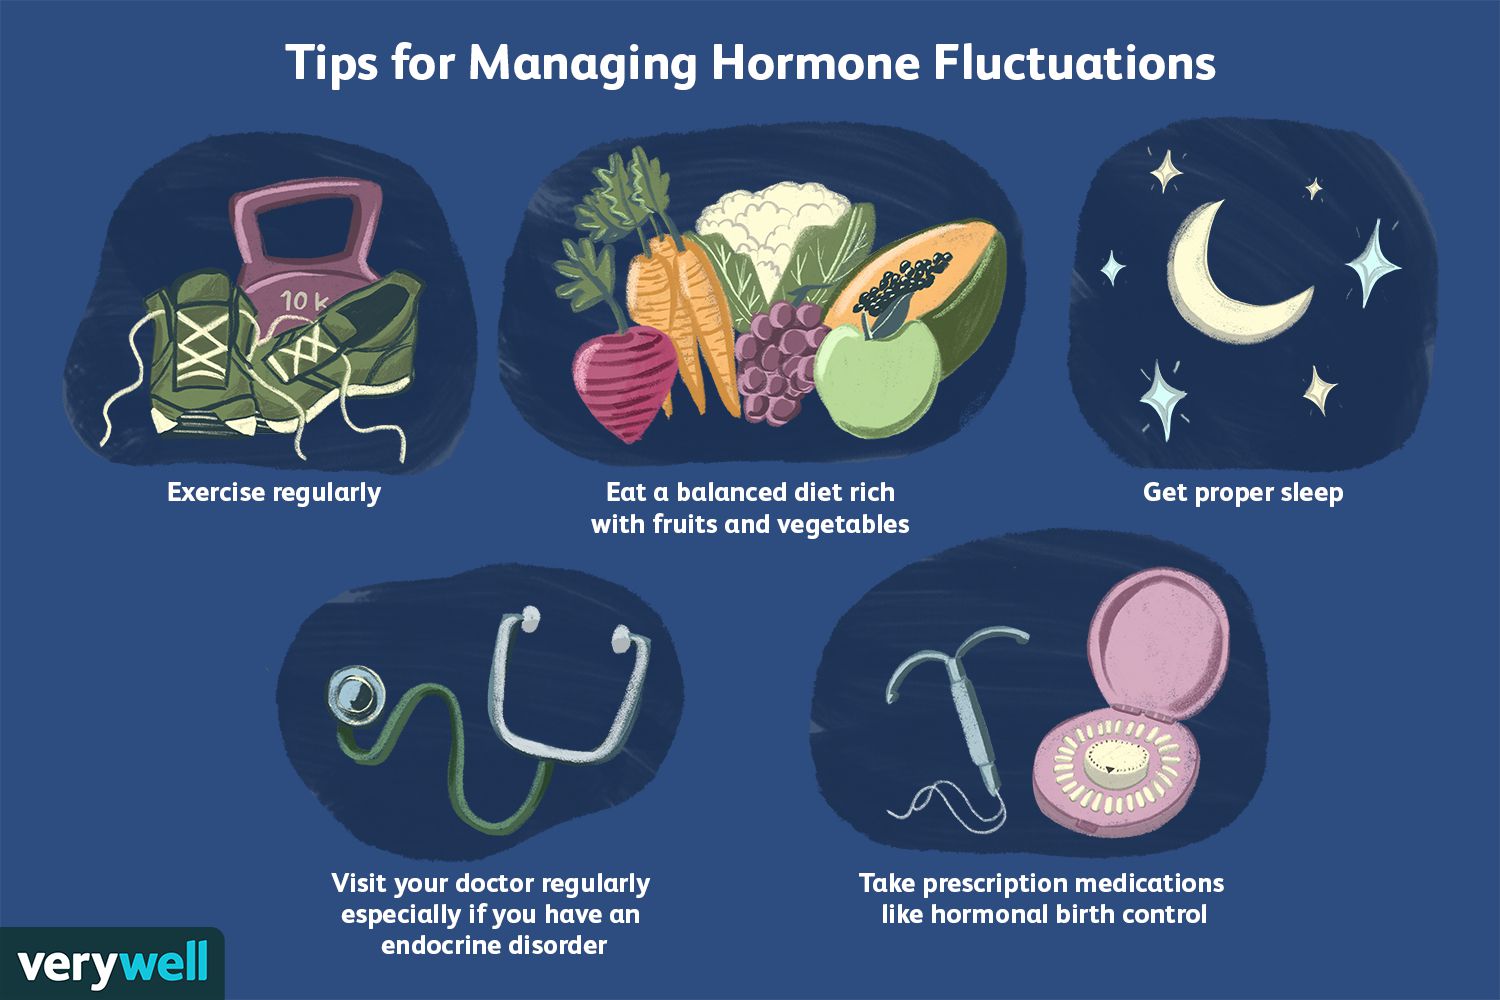 Lifestyle Factors That Affect Hormonal Balance